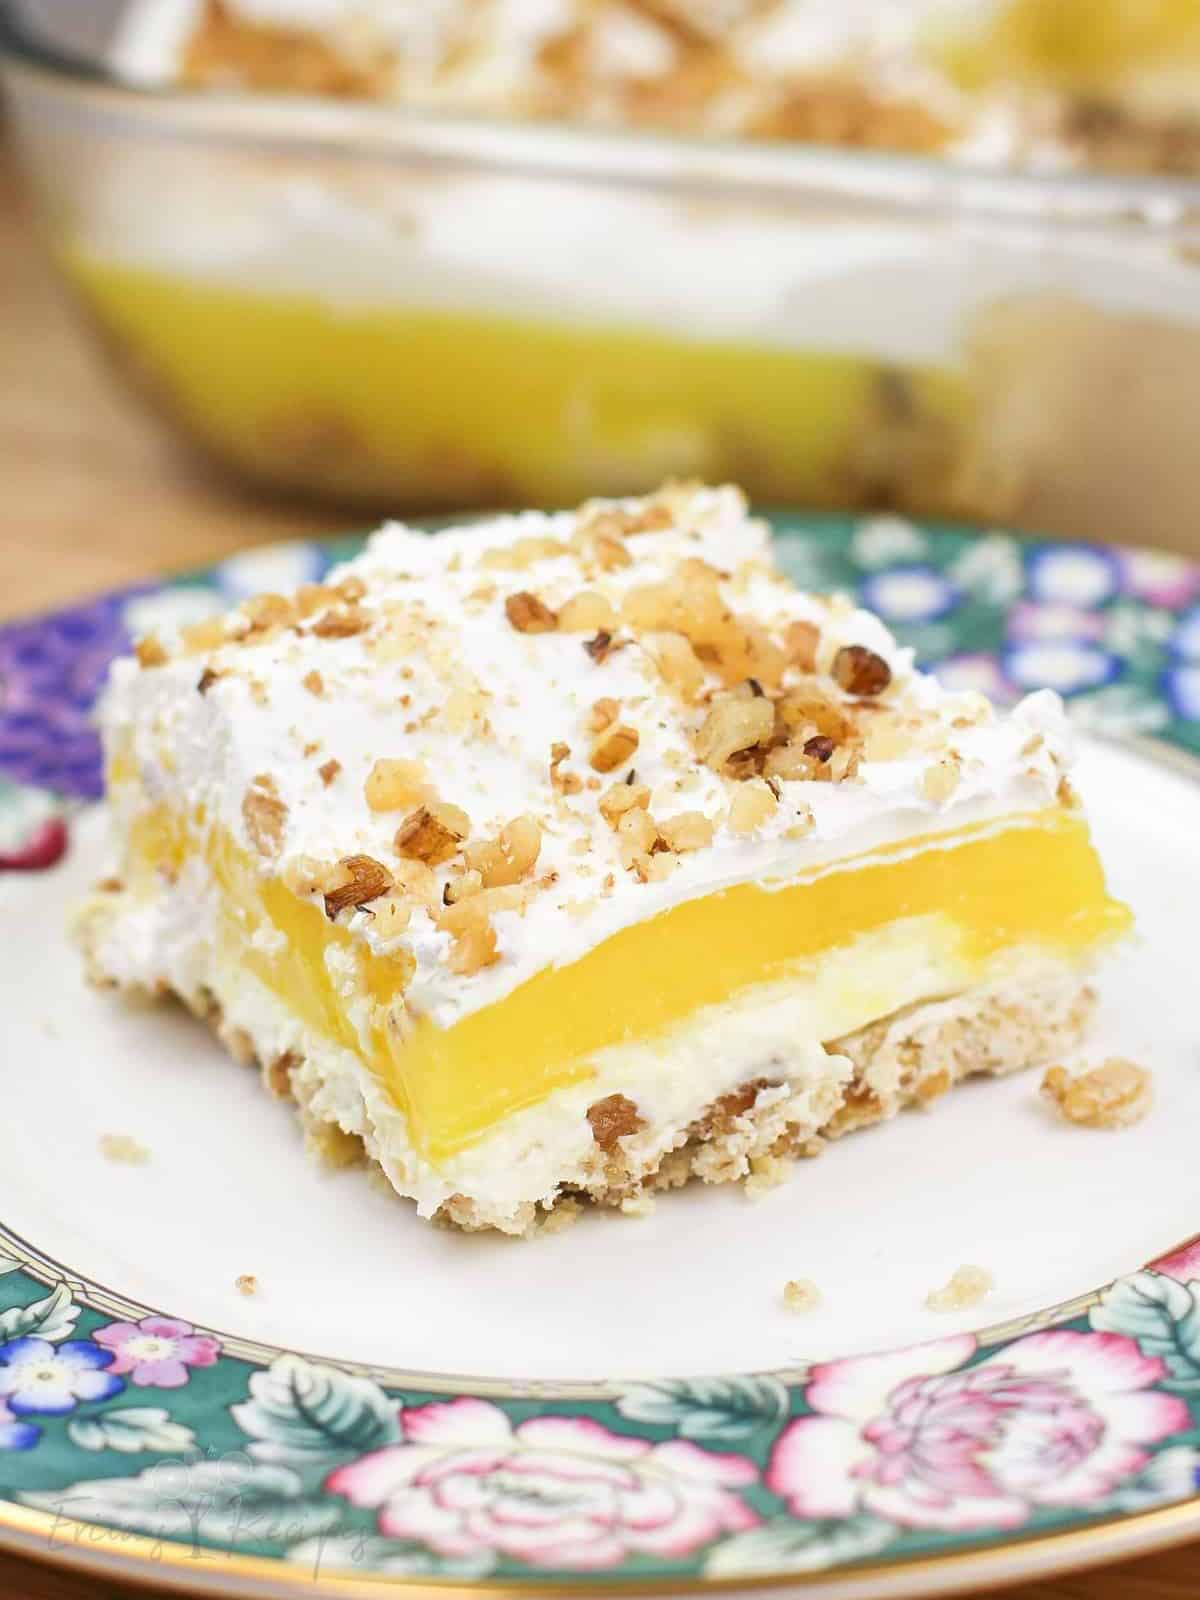 a tantalizing lemon delight dessert with creamy lemon filling.